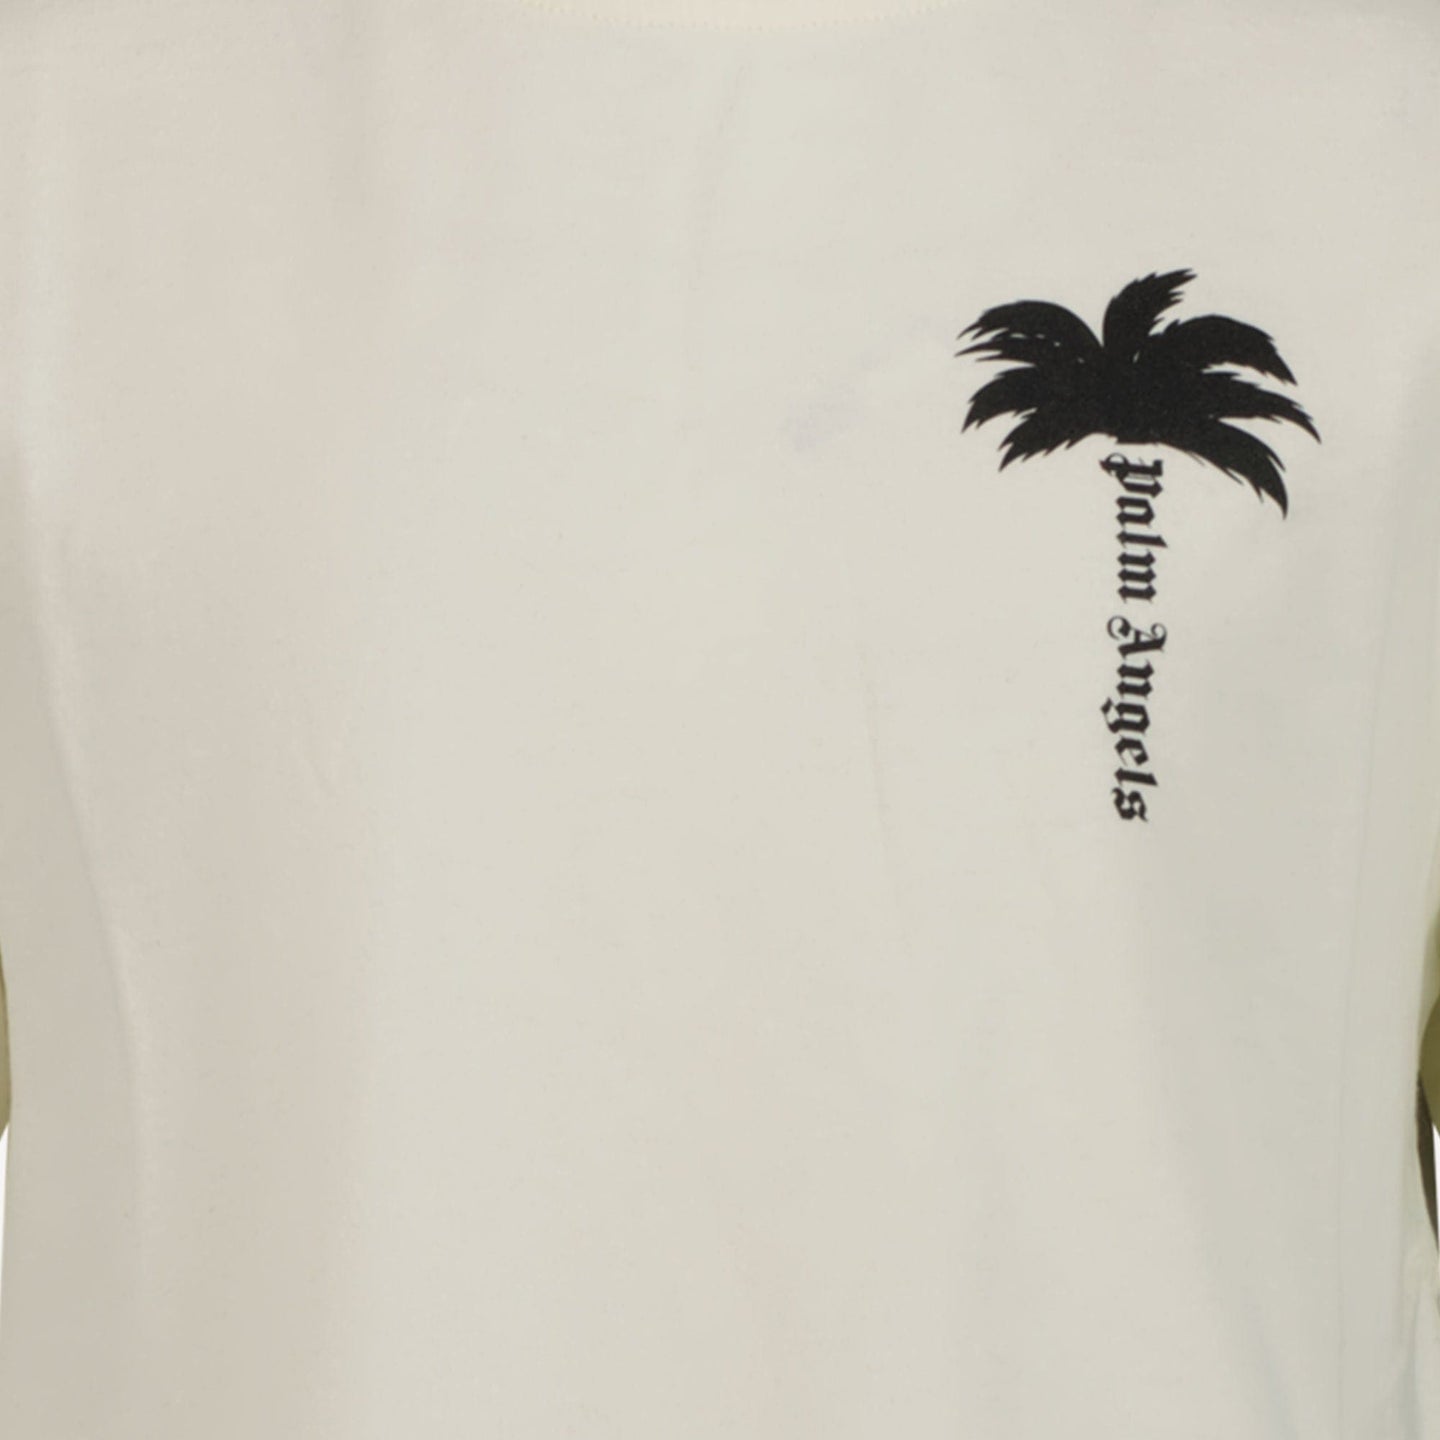 Palm Angels Jongens T-shirt Ecru 4Y